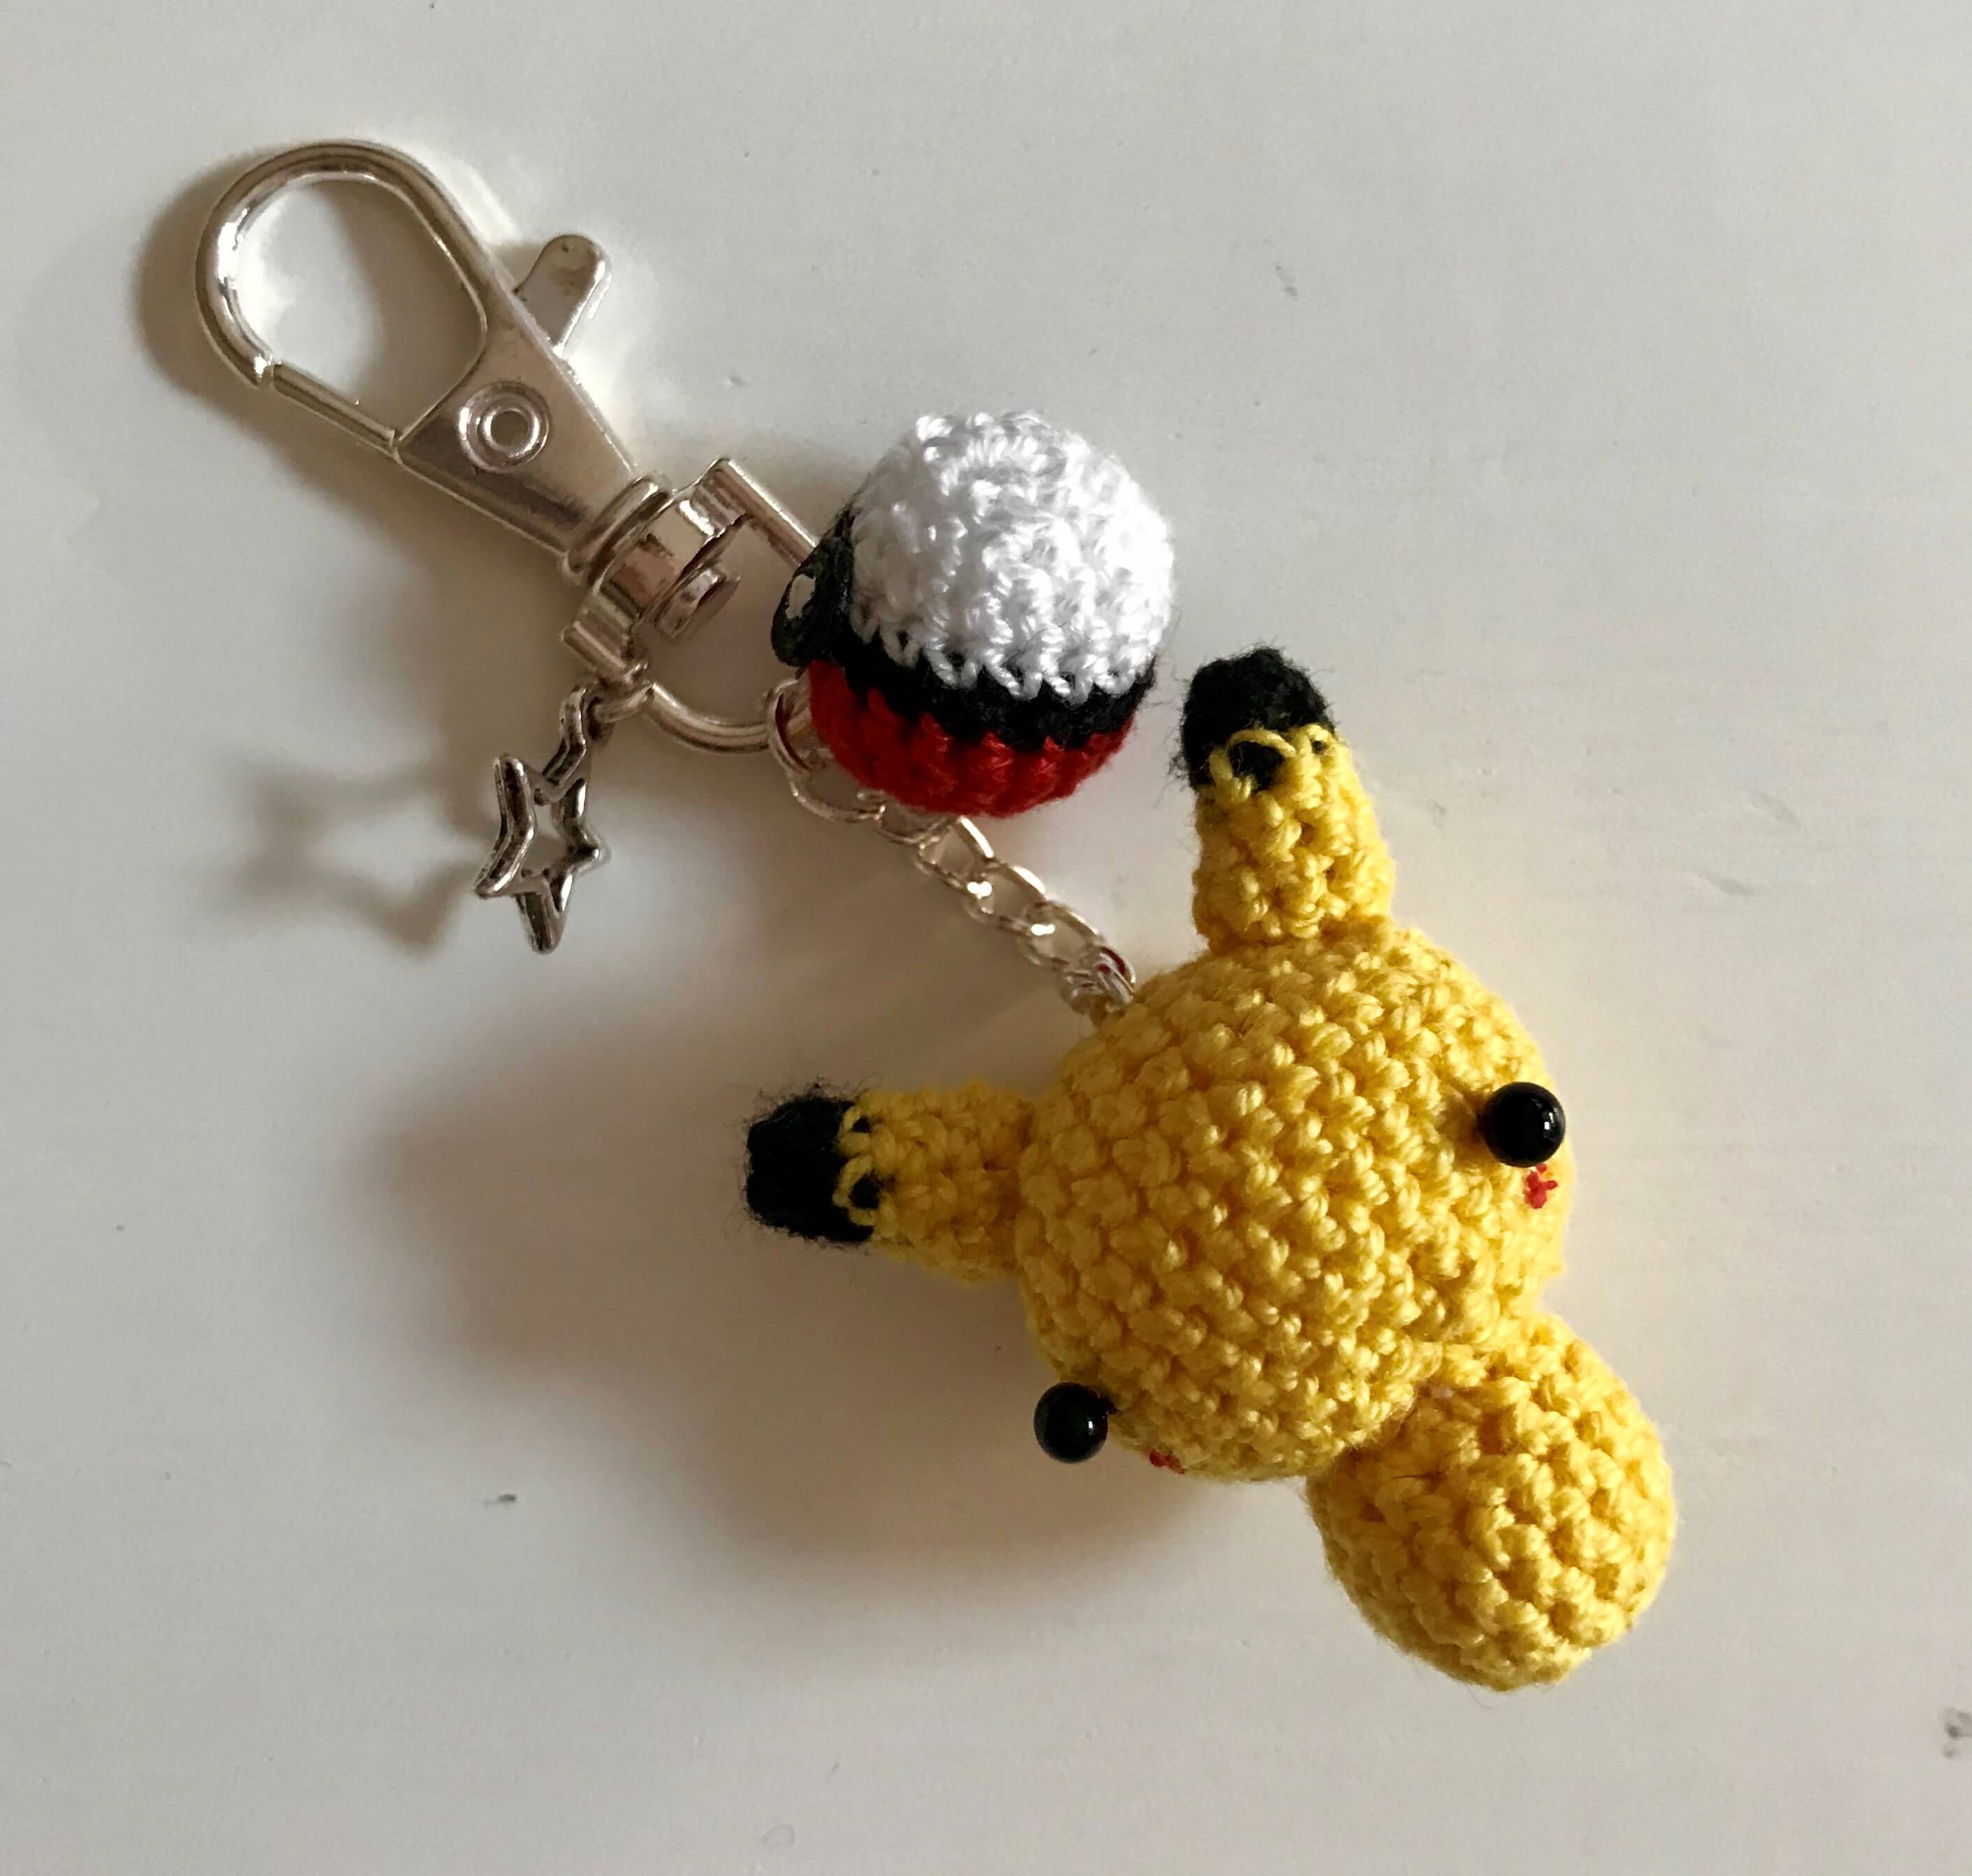 Pikachu porte clé